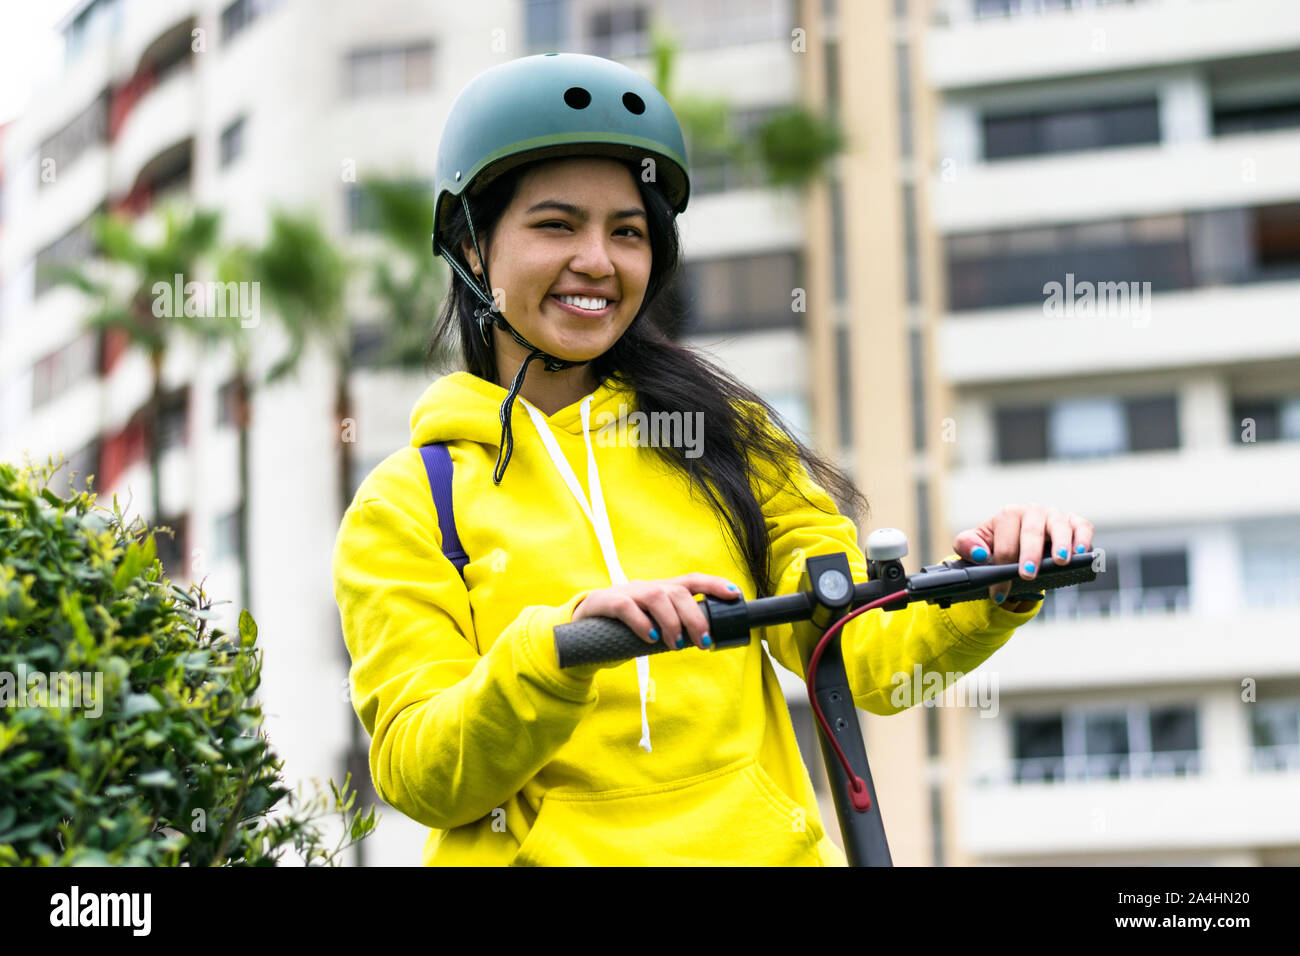 Lachende junge Frau mit Helm auf einem elektrischen scooter Stockfoto